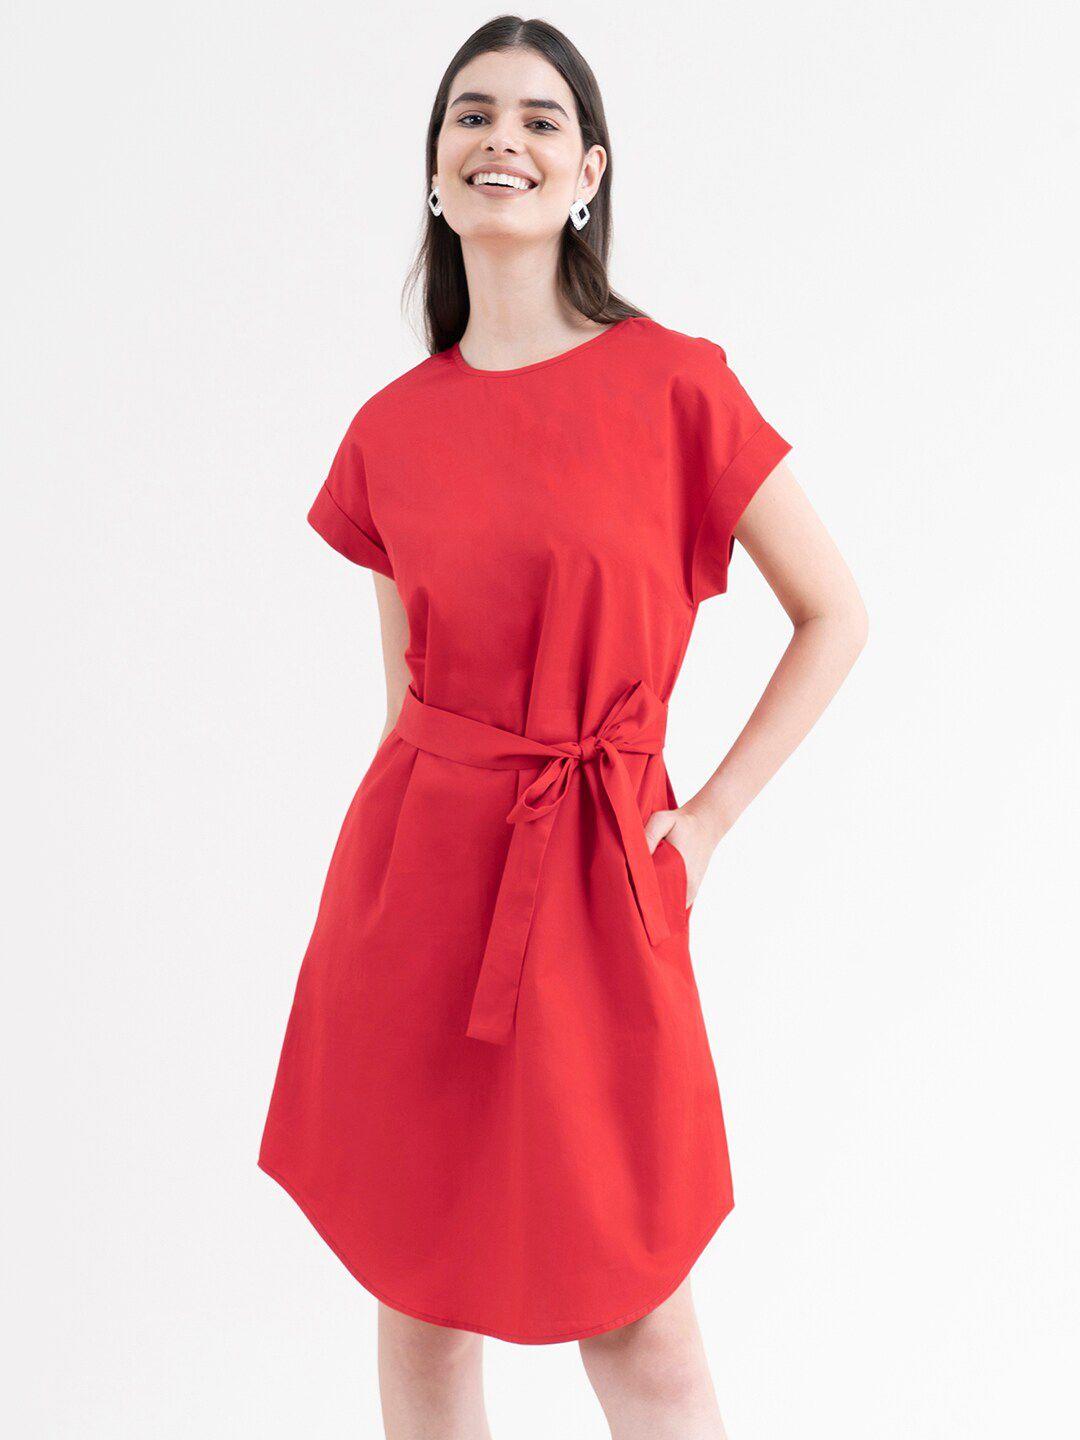 fablestreet-women-red-a-line-dress